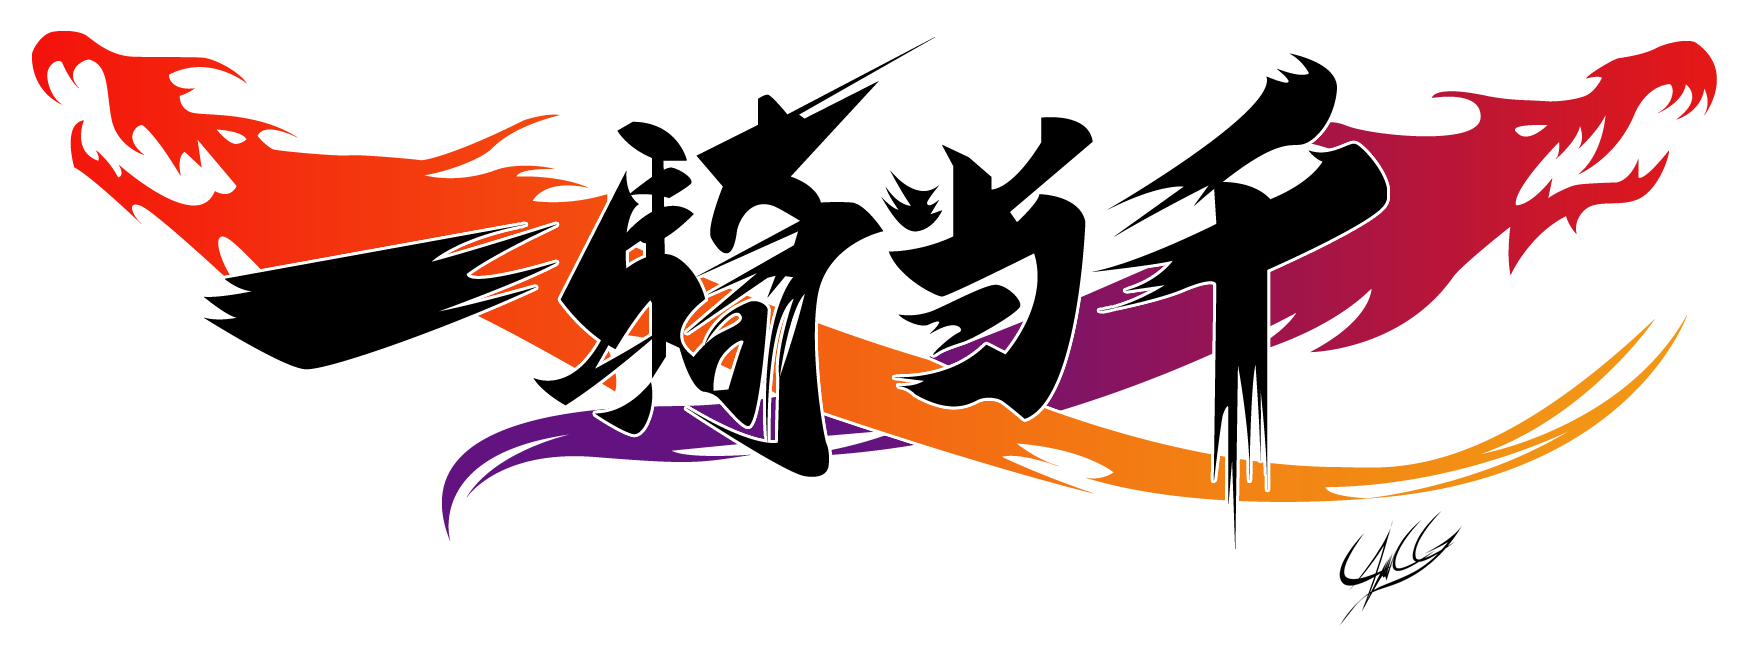 Ikki Tousen Xcross Impact-Logo by PonyChaos13 on DeviantArt